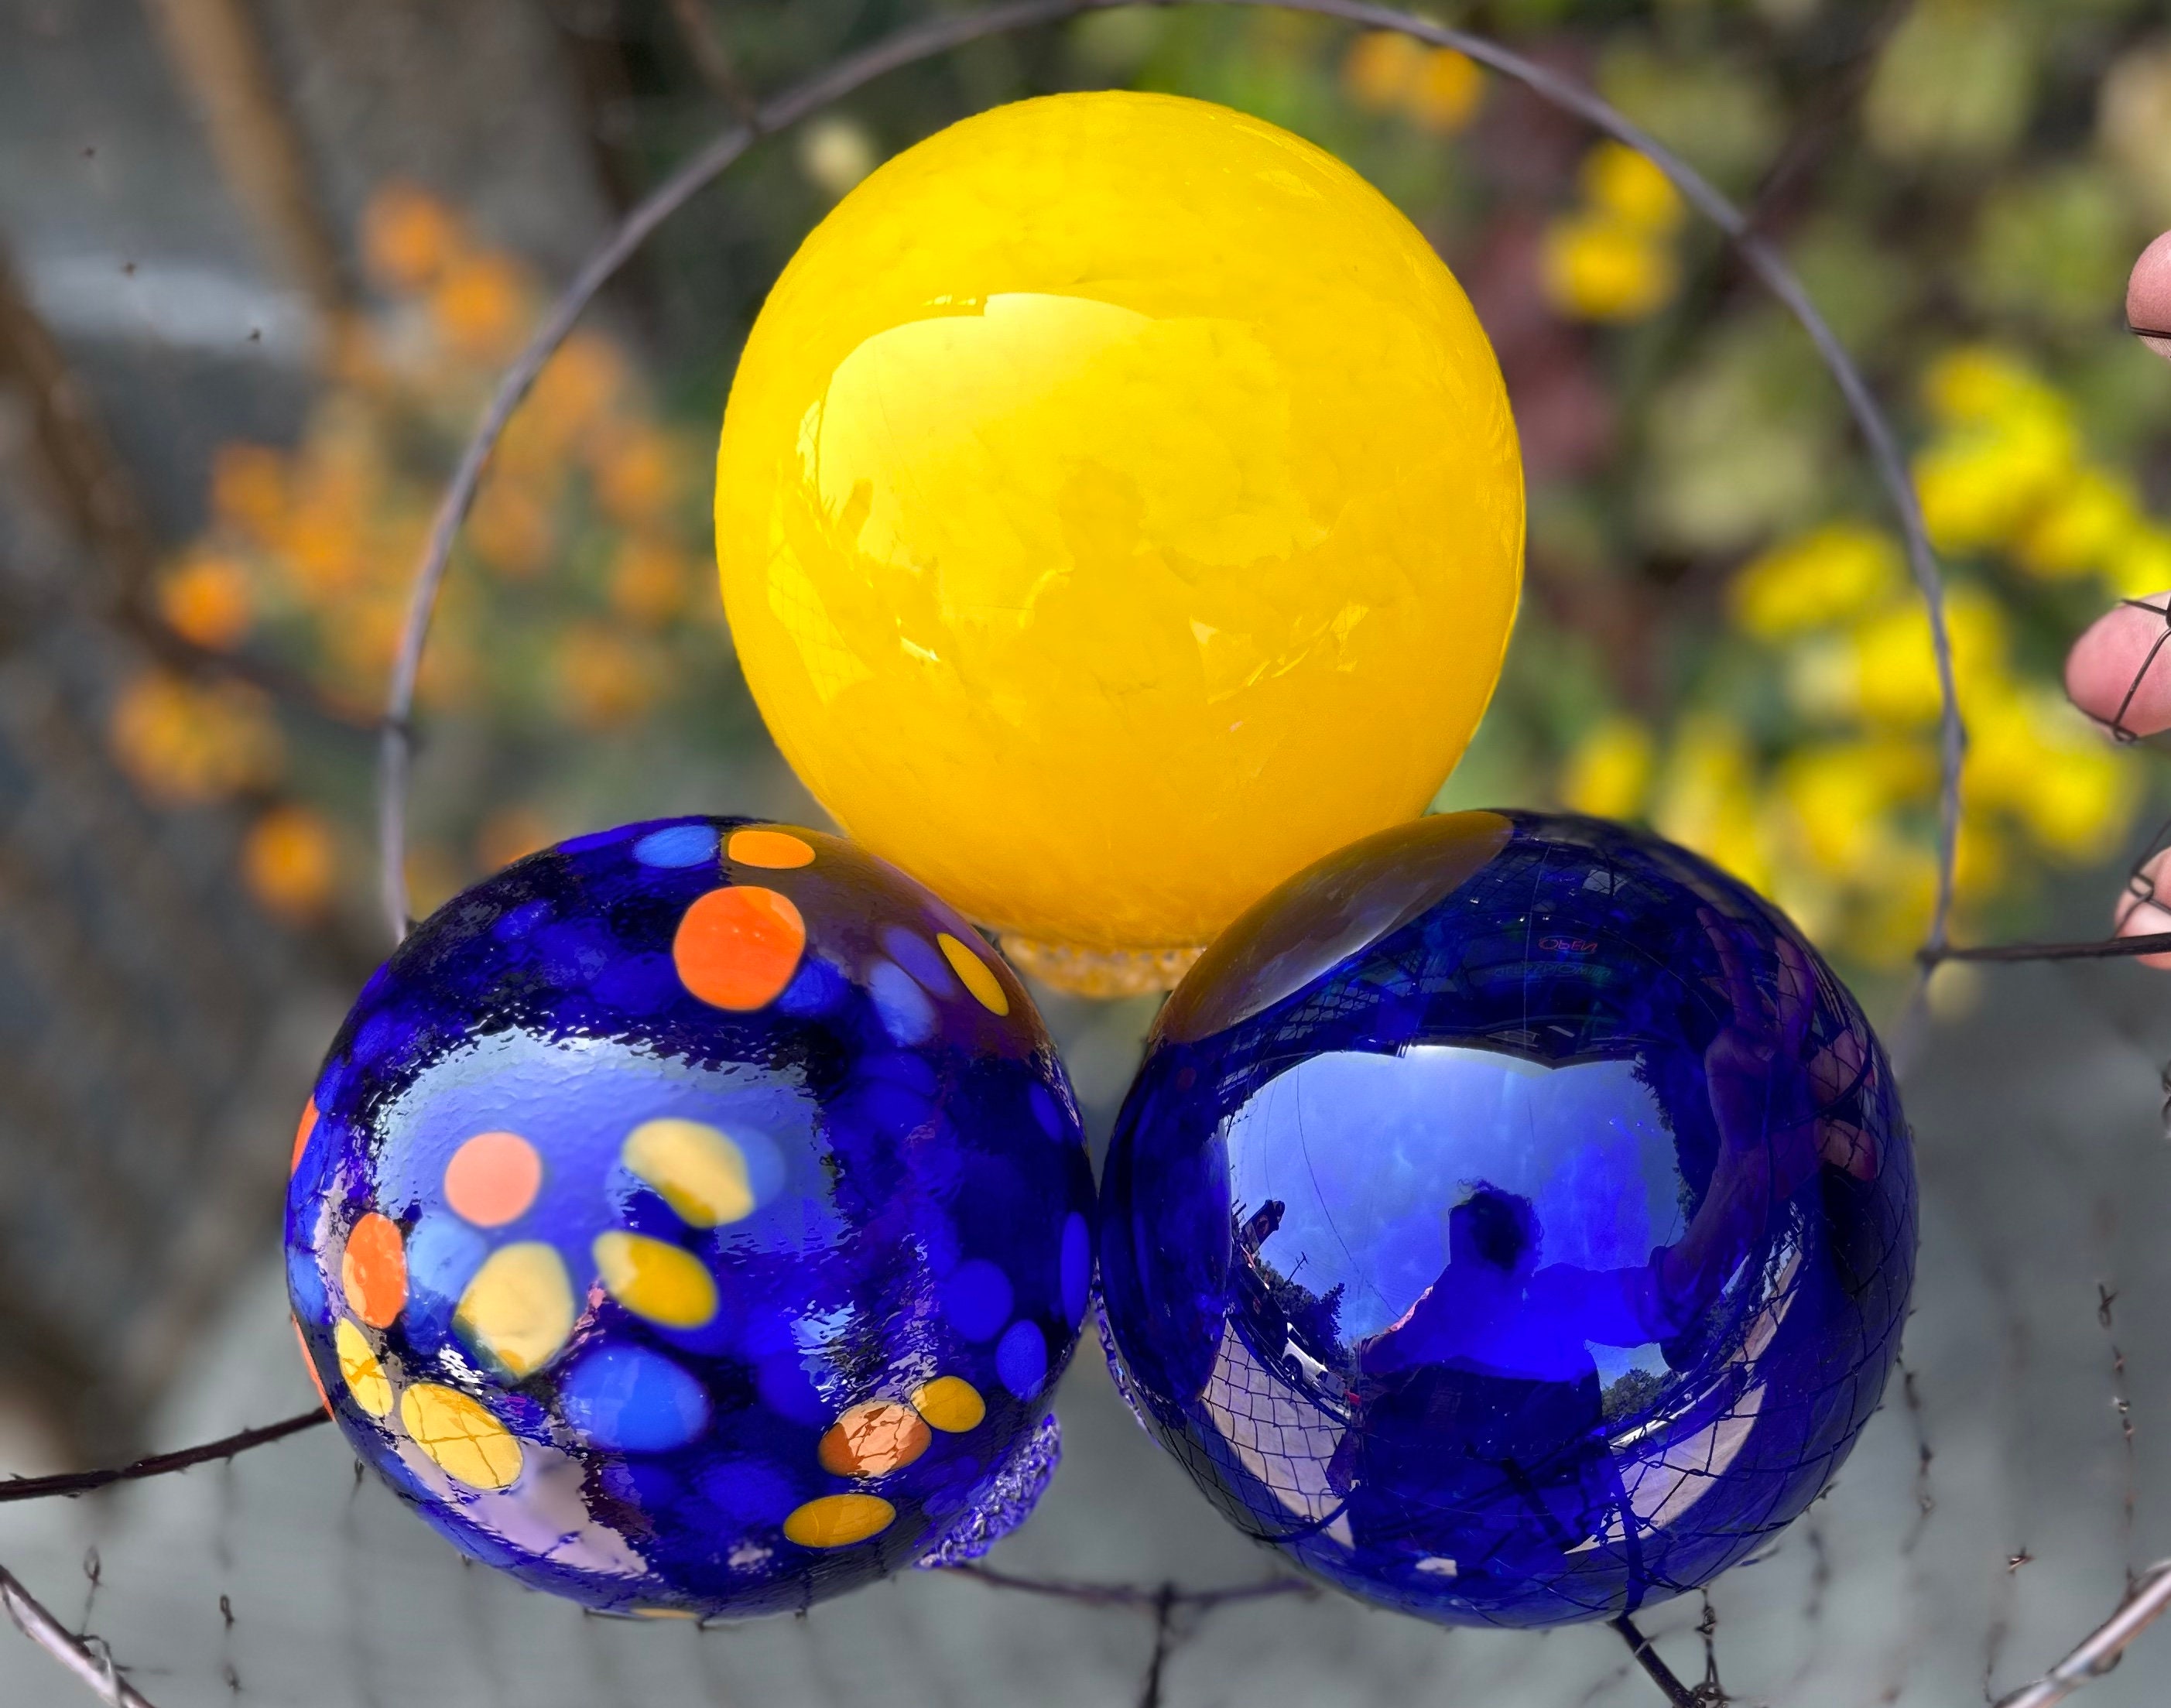 Blue & Yellow Floats, Set of 3 Hand Blown Glass Gaze Balls, 4.25